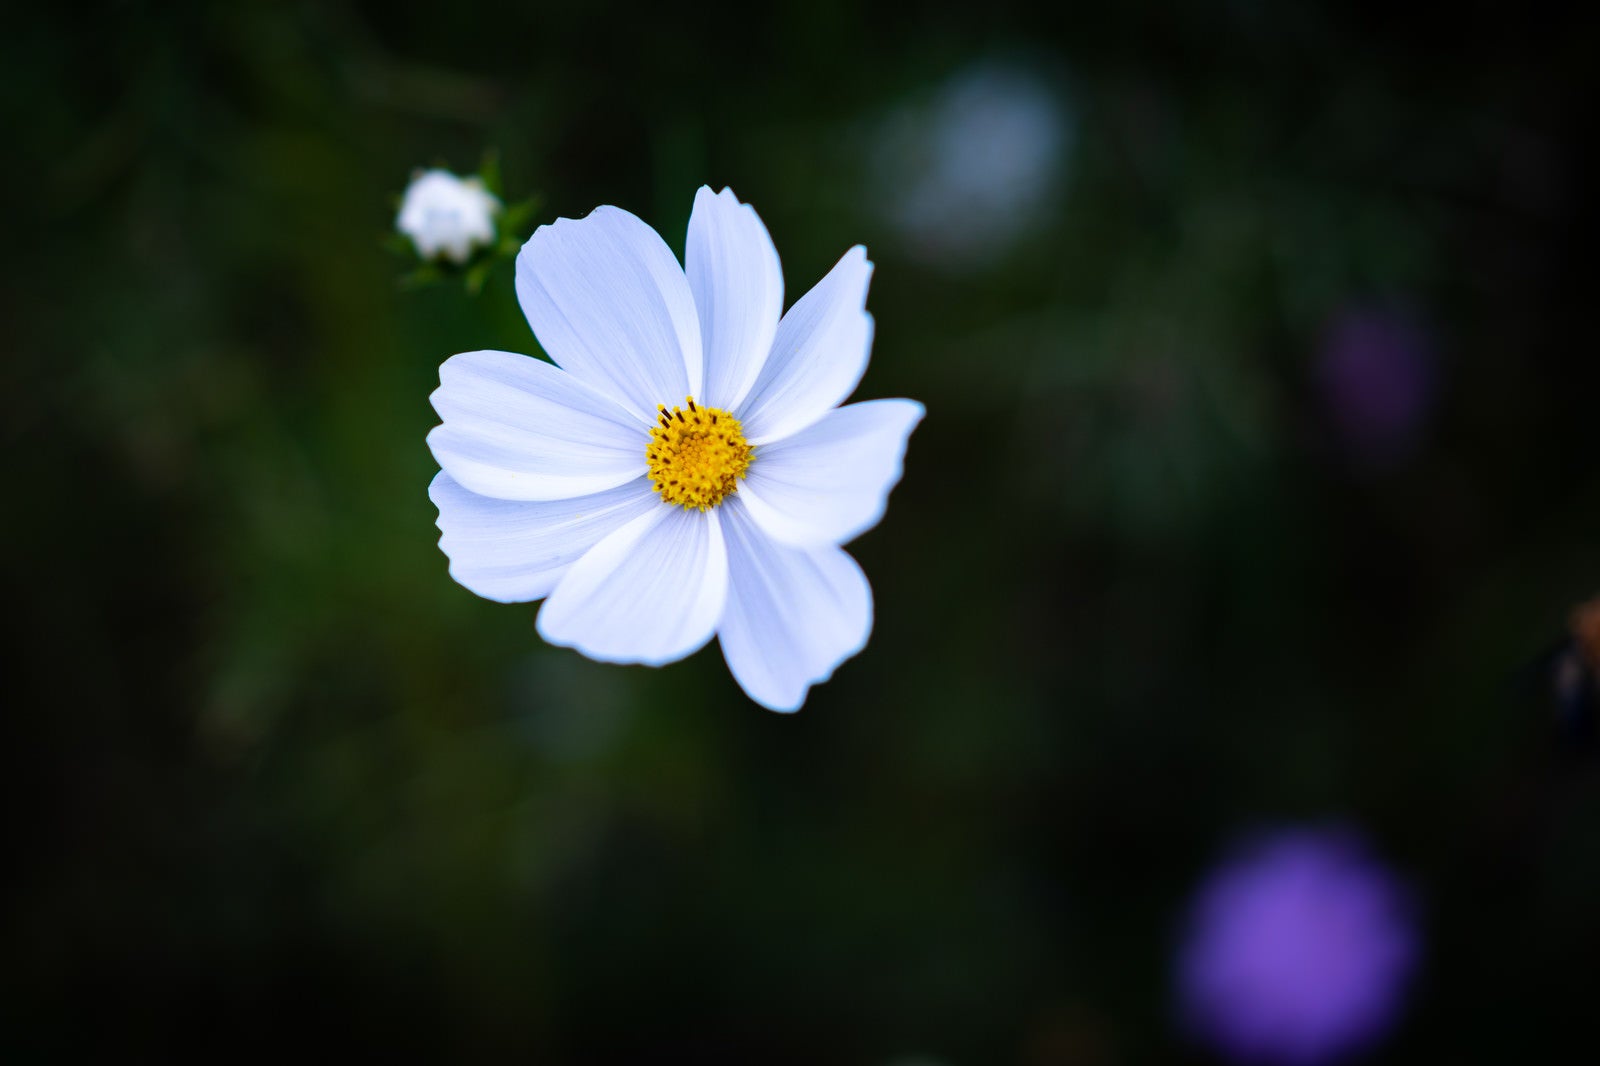 「白い花弁のコスモス」の写真